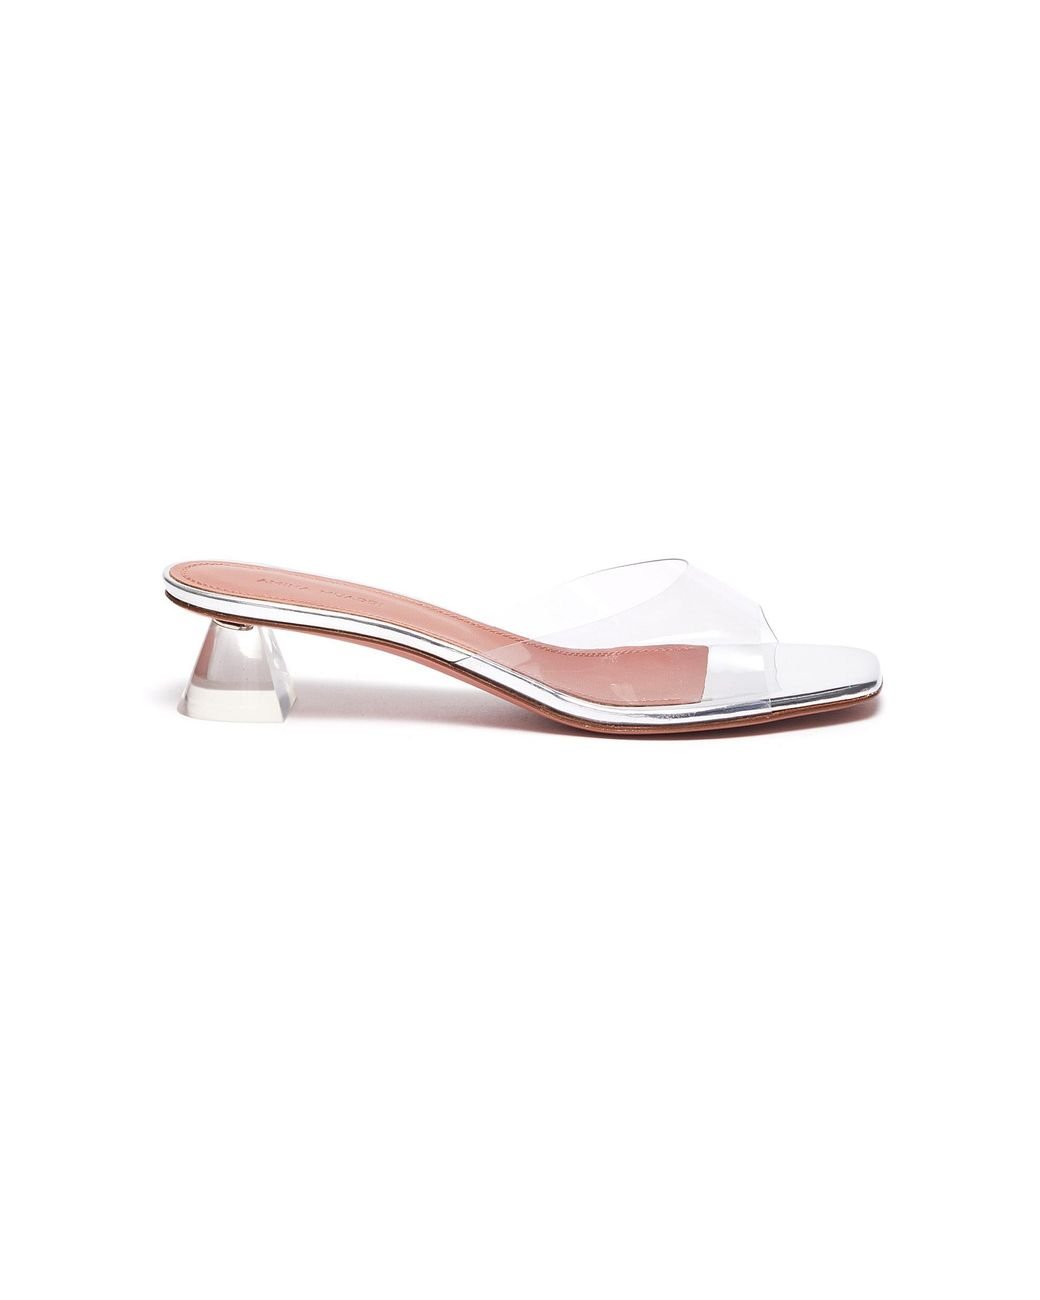 AMINA MUADDI 'lupita' Transparent Glass Heeled Sandals Women Shoes ...